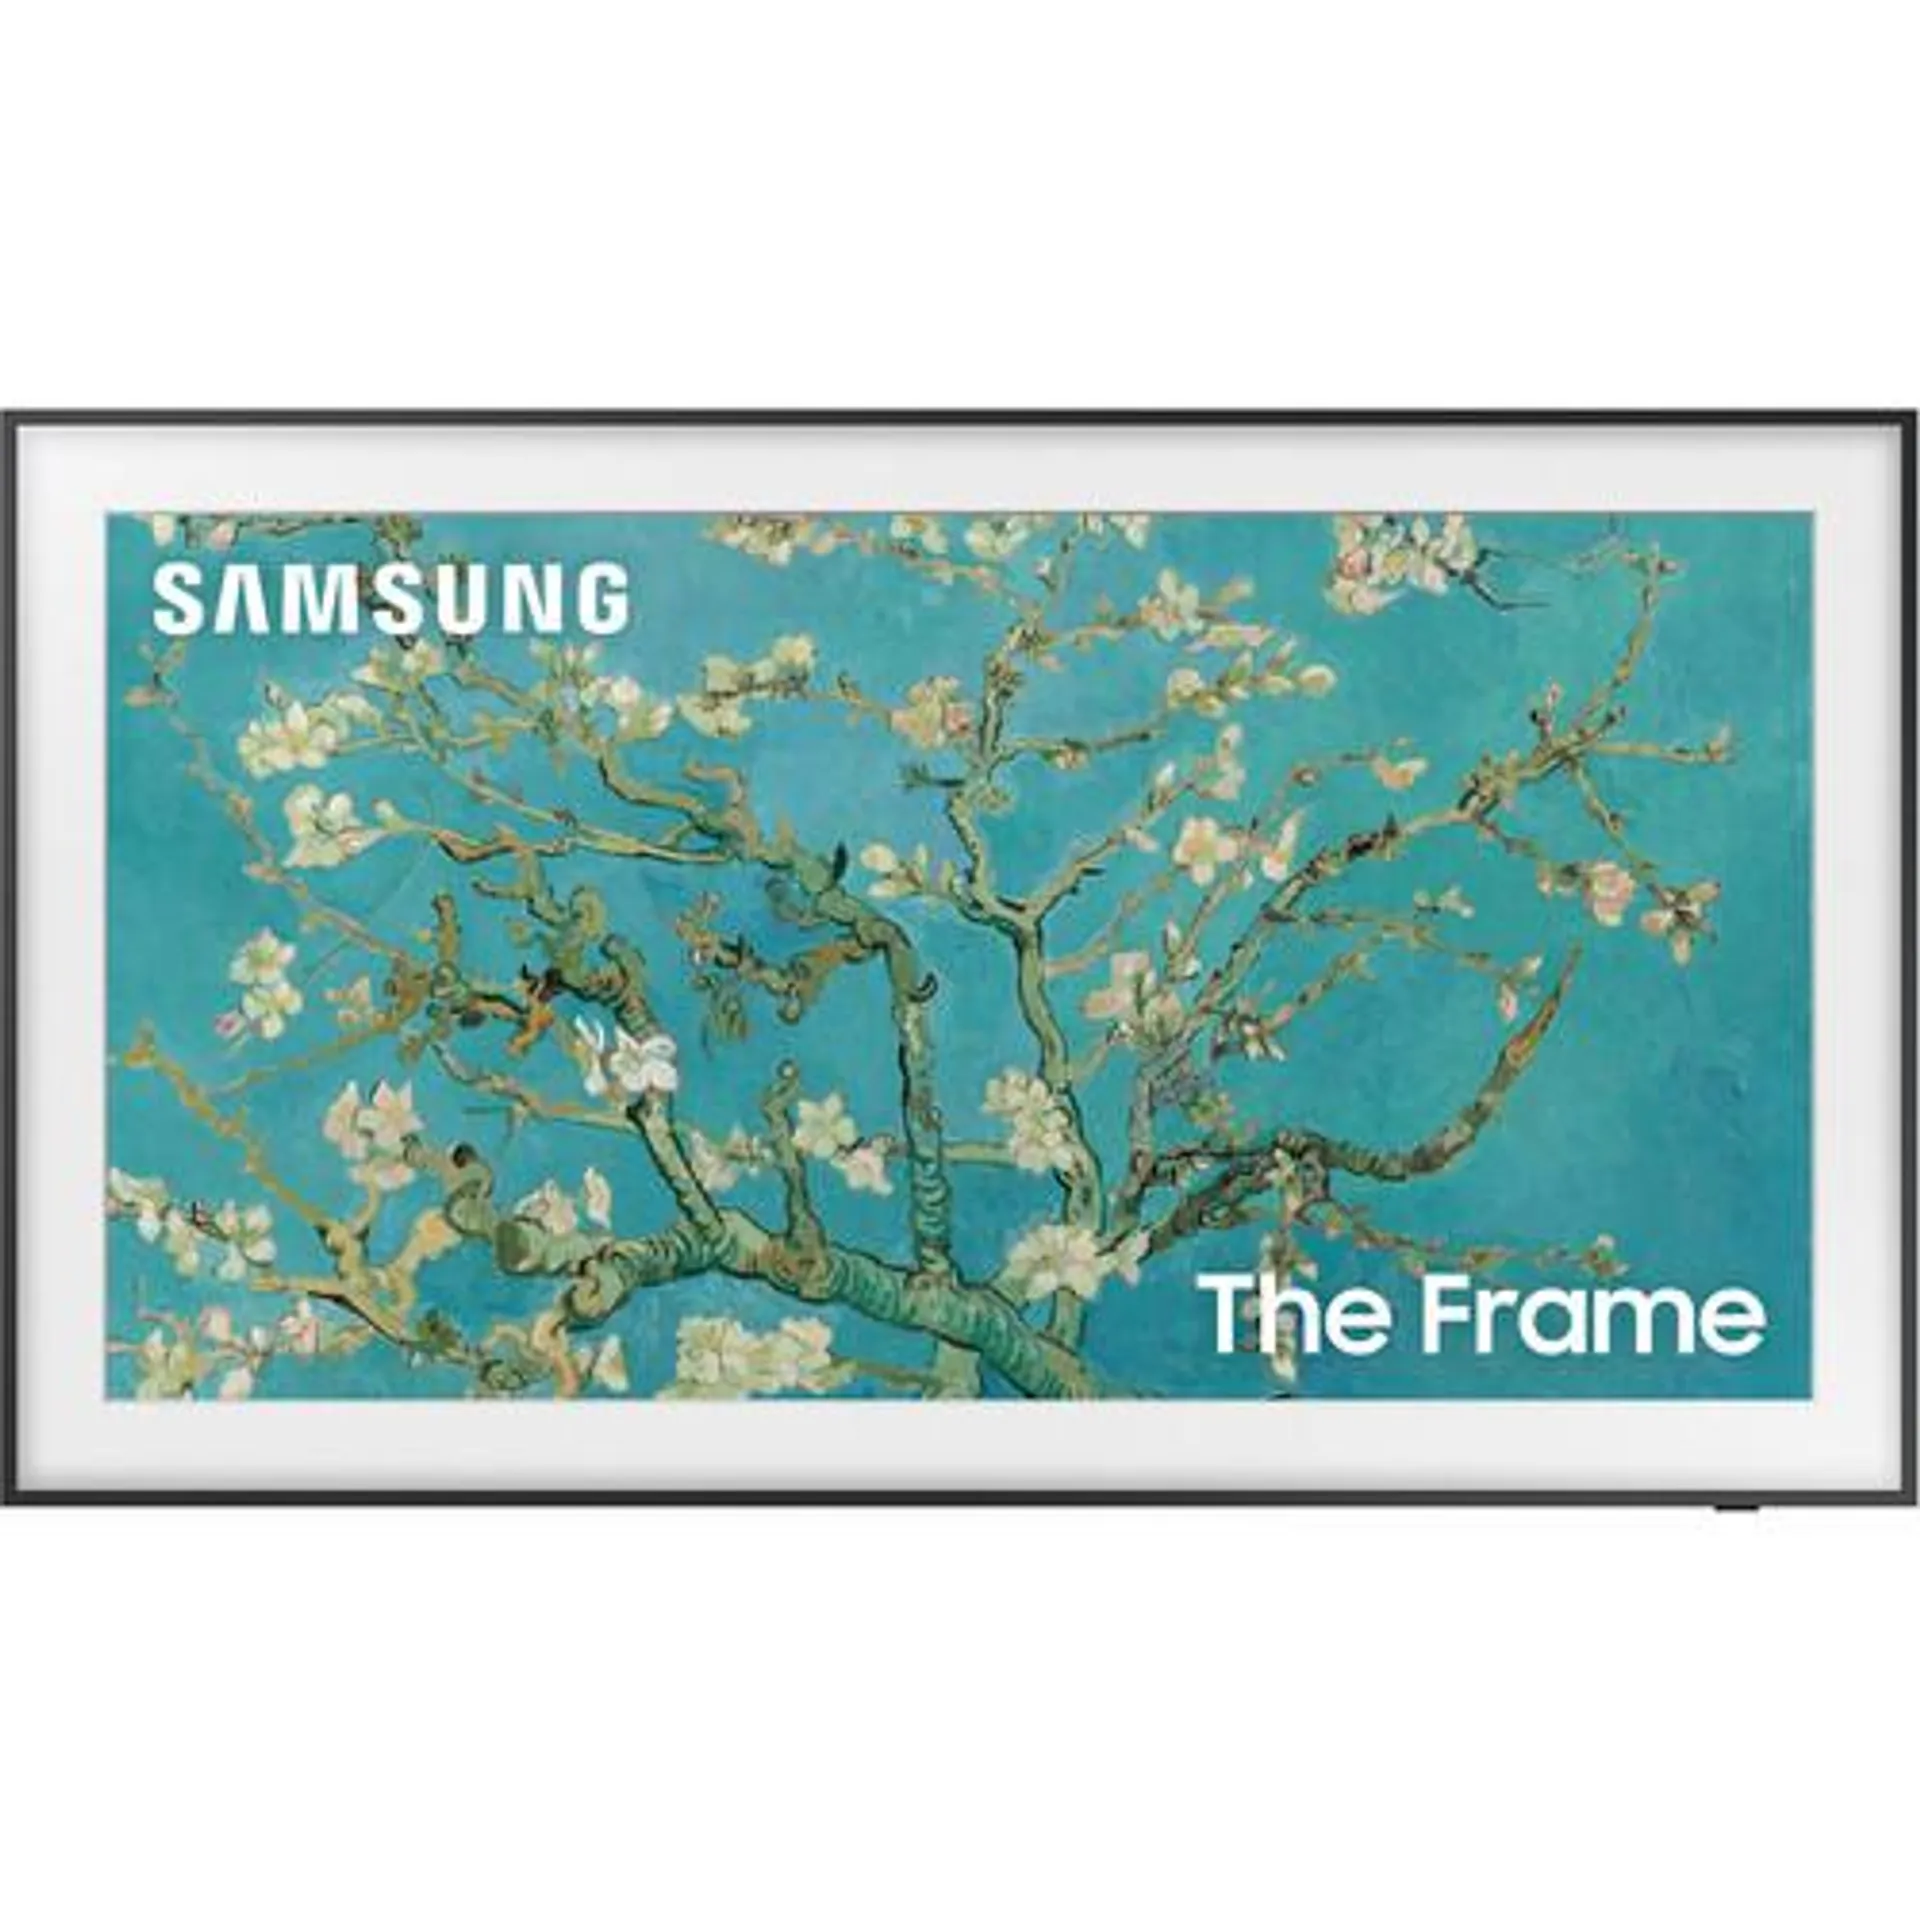 Samsung The Frame 32" 4K HDR Smart QLED TV